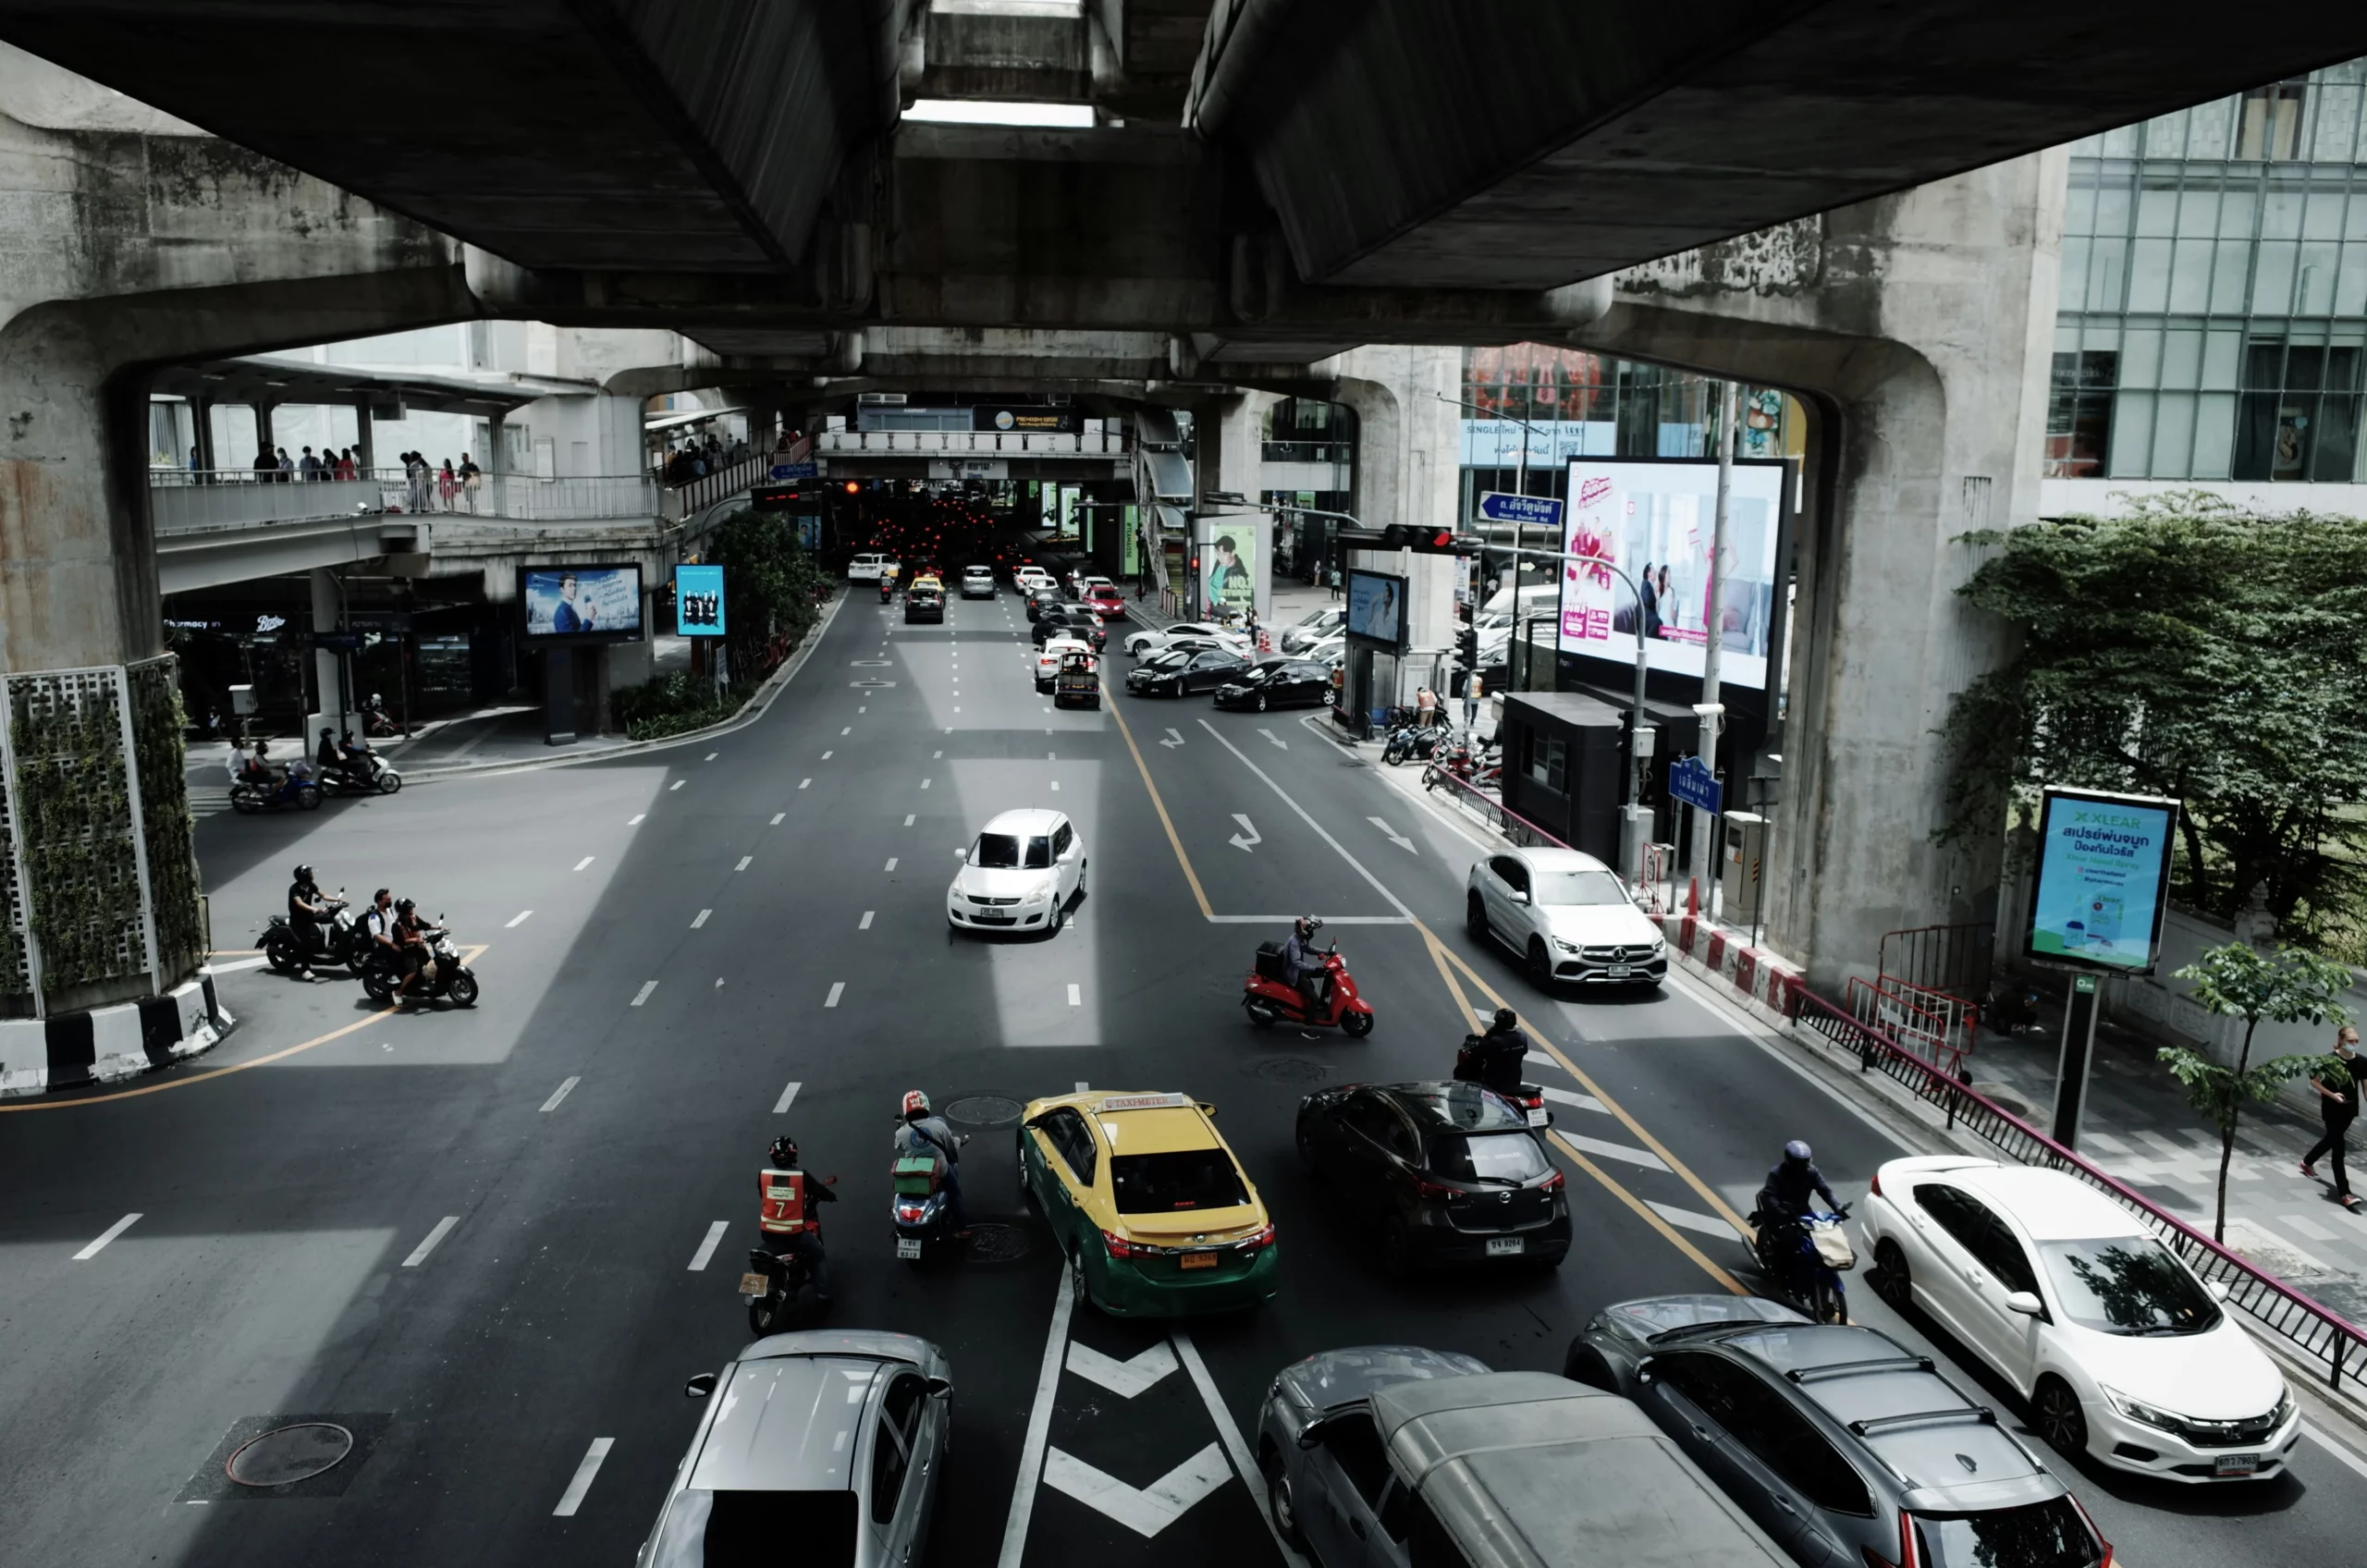 曼谷道路,路橋下景象,多台車輛等待紅燈